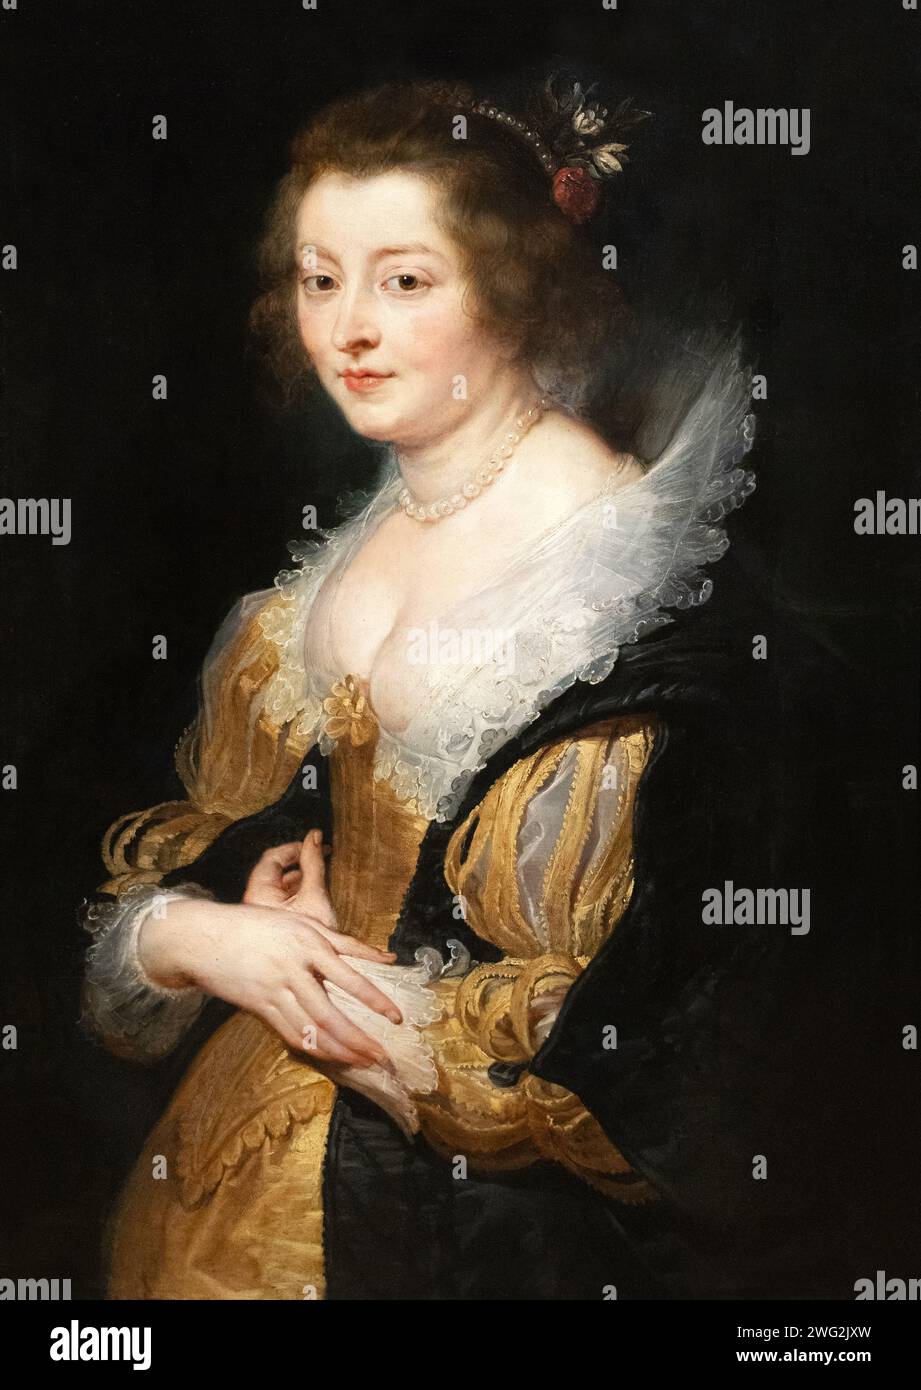 Pierre Paul Rubens peinture, «Portrait d'une femme», c.1625-30, huile sur panneau ; peut-être Elizabeth Fourmont, sa belle-sœur. portrait du 17e siècle. Banque D'Images